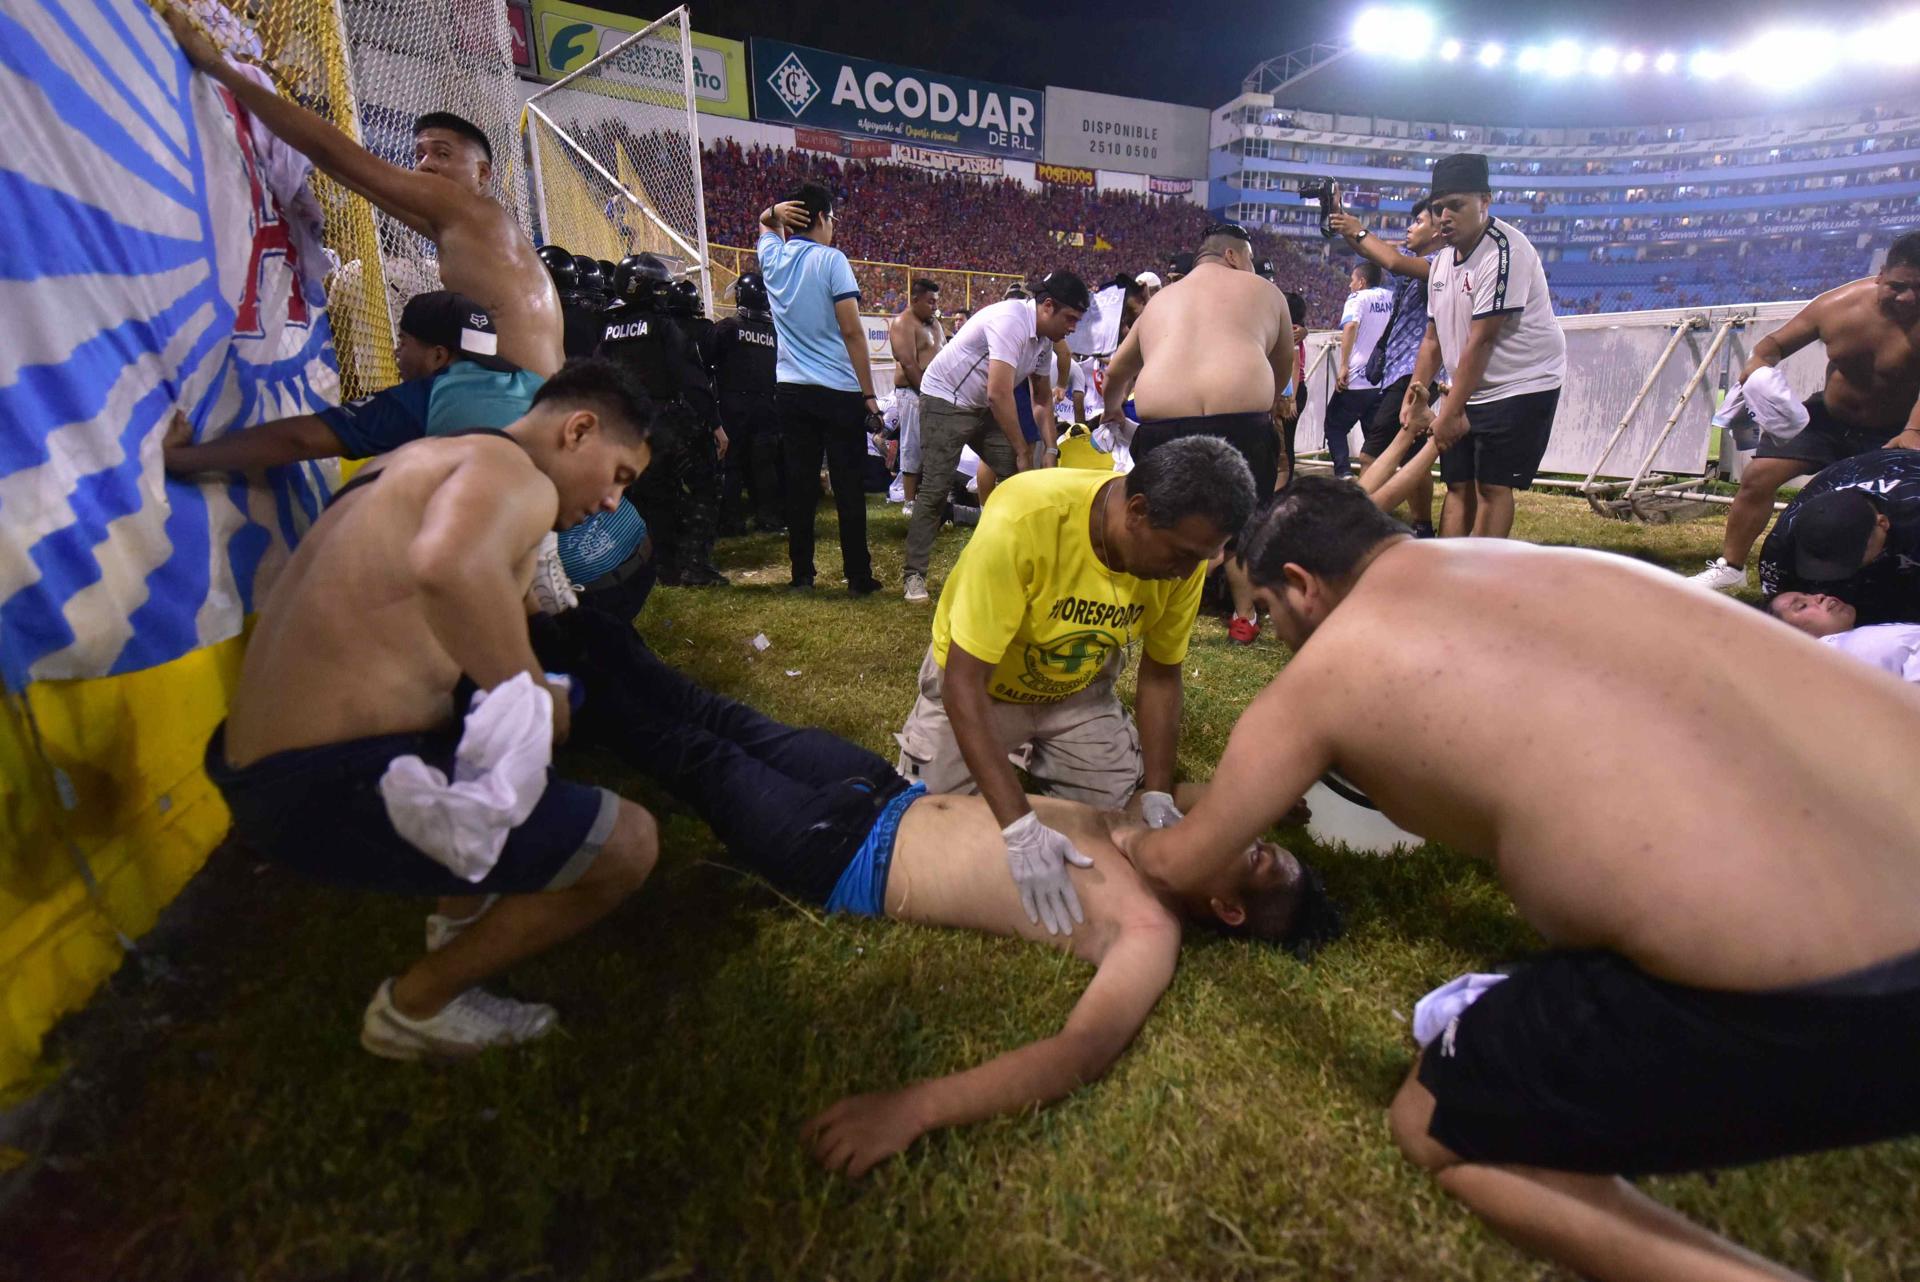 Señalan sobreventa de entradas y boletos falsos en tragedia en estadio salvadoreño